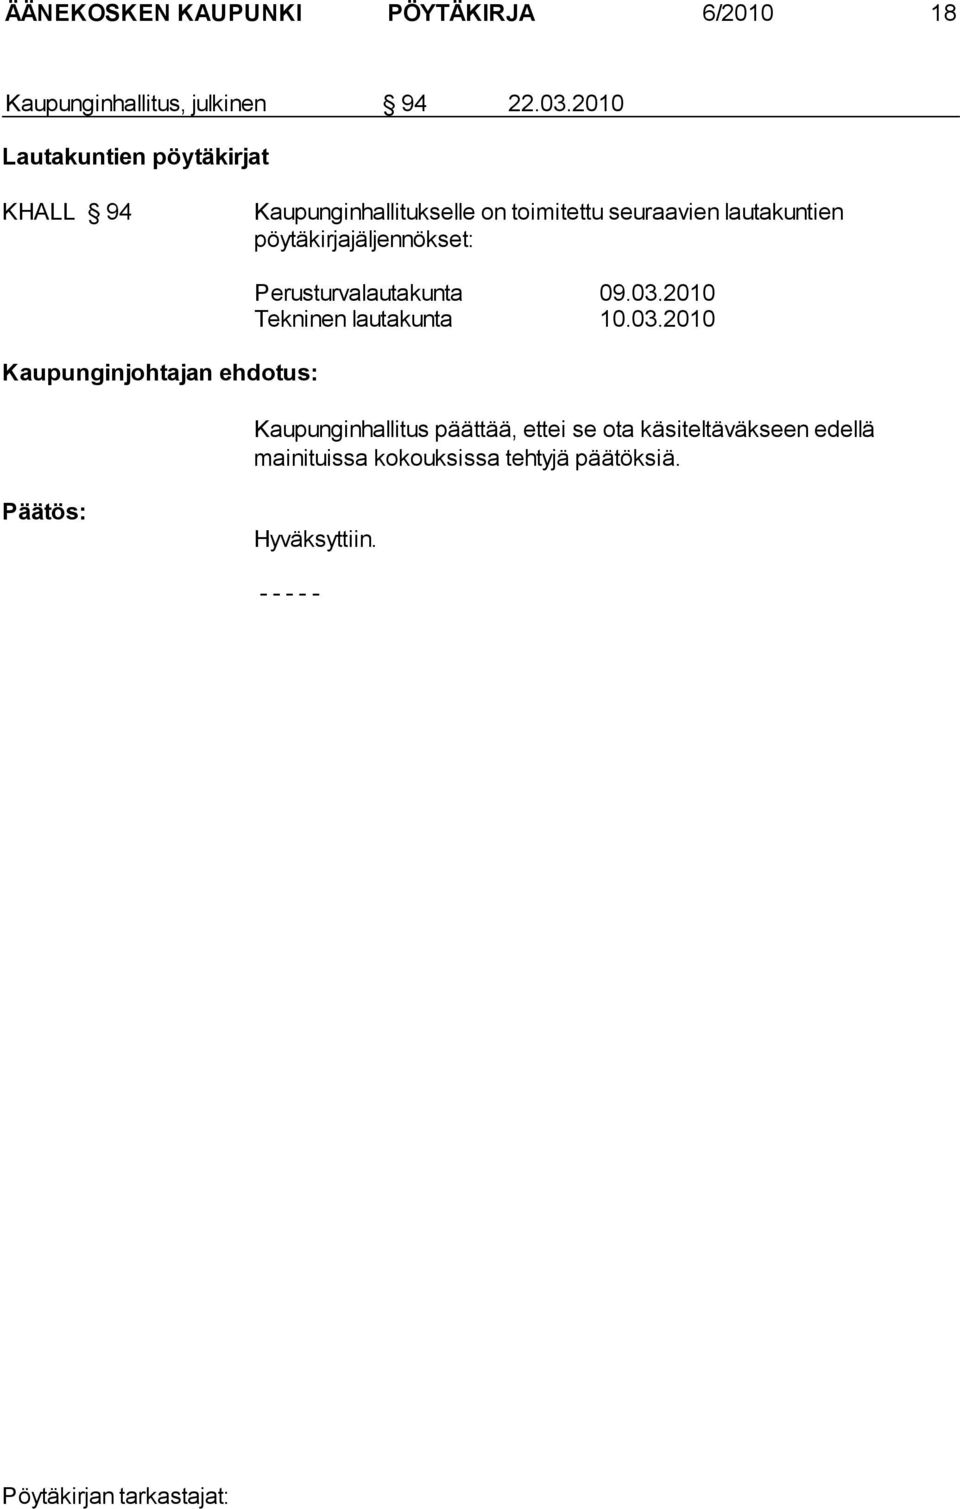 pöytäkirjajäljennökset: Kaupunginjohtajan ehdotus: Perusturvalautakunta 09.03.2010 Tekninen lautakunta 10.